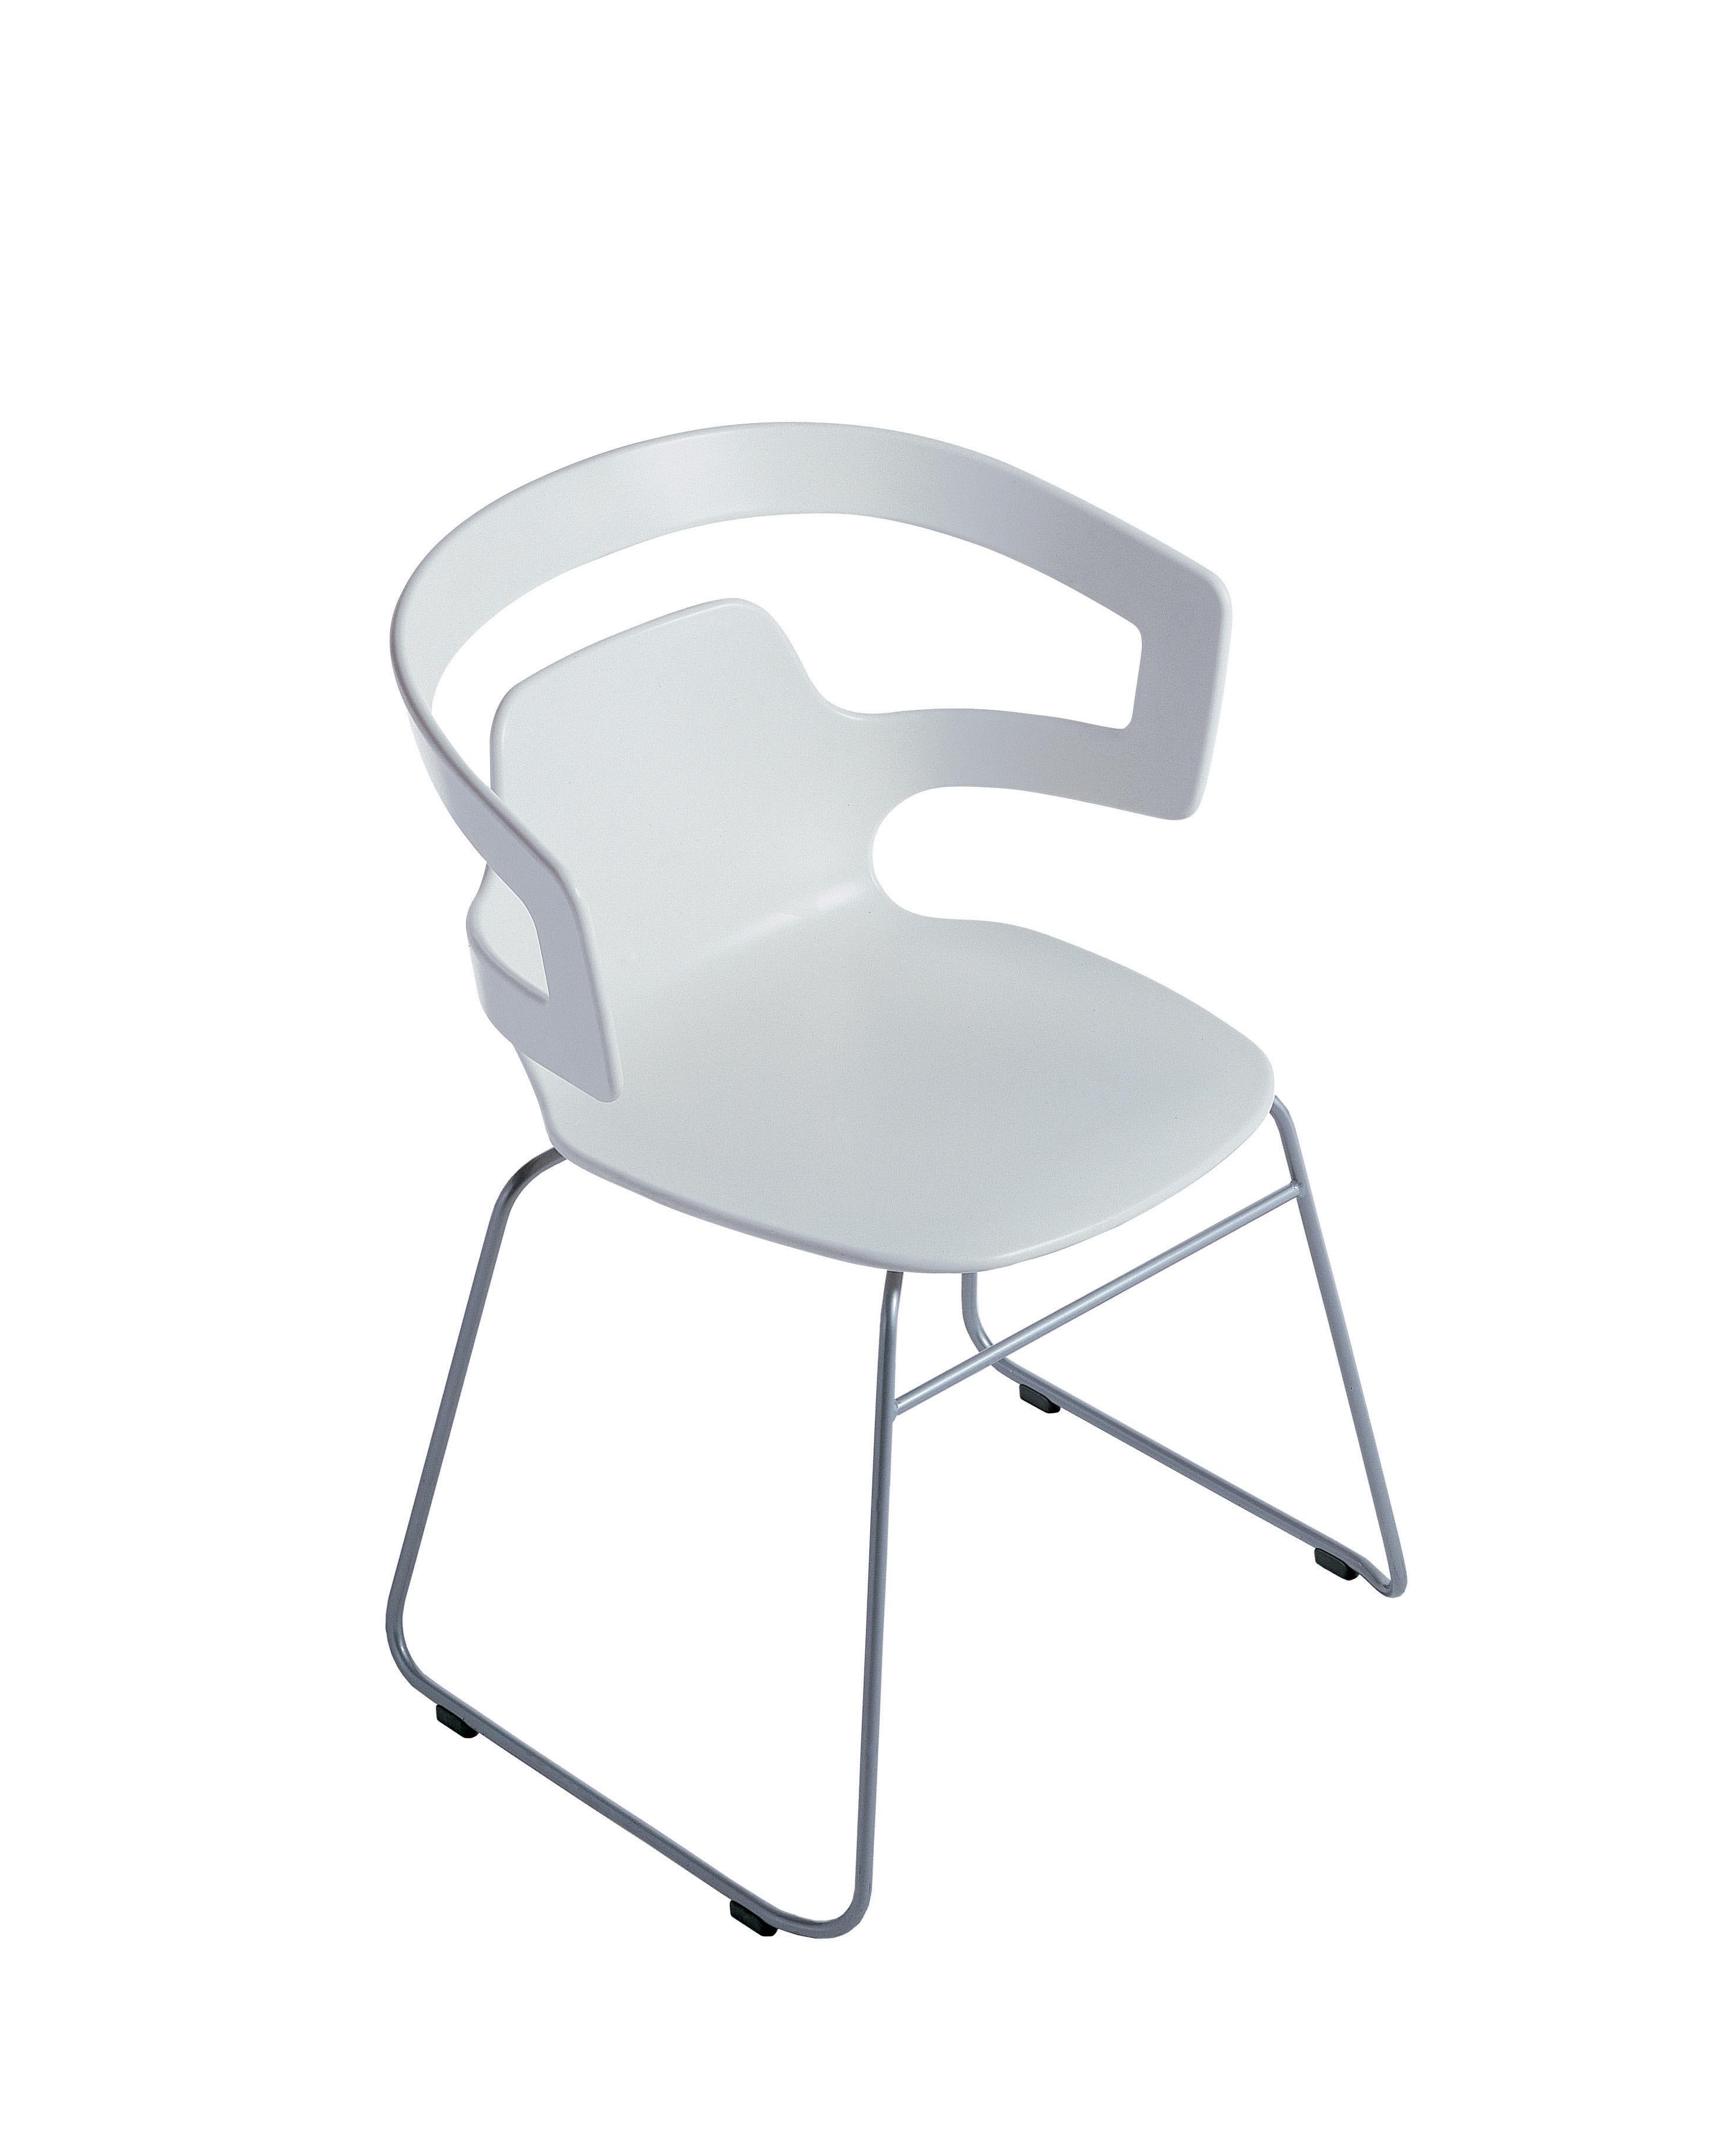 Italian Alias 501 Segesta Sledge Chair in White & Chromed Steel Frame by Alfredo Häberli For Sale